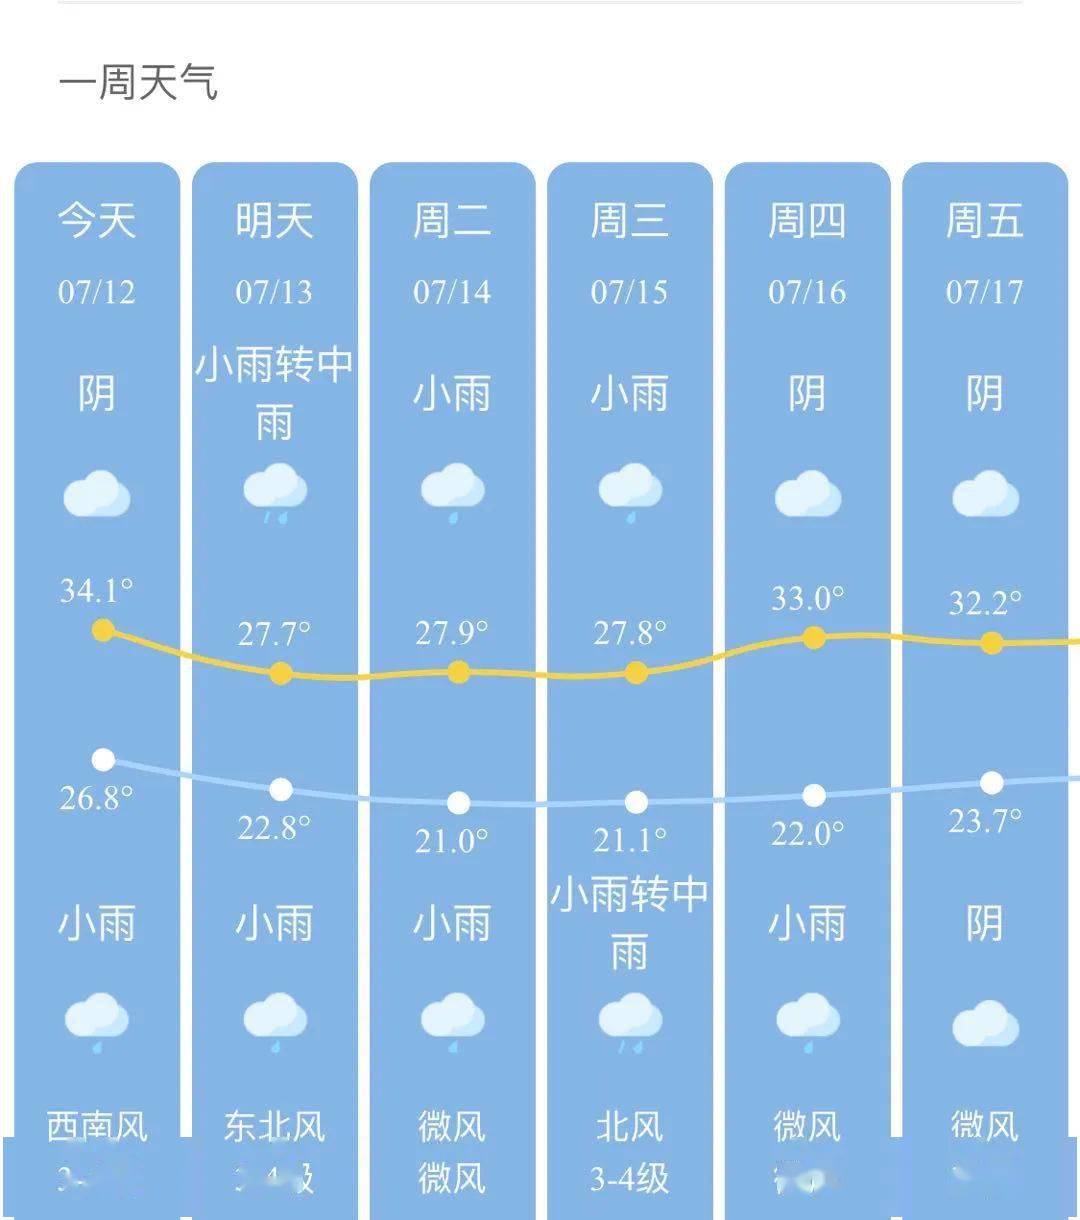 富春江梅汛(王鹏/摄) 短期天气预报:今天夜里多云,明天多云转阴有时